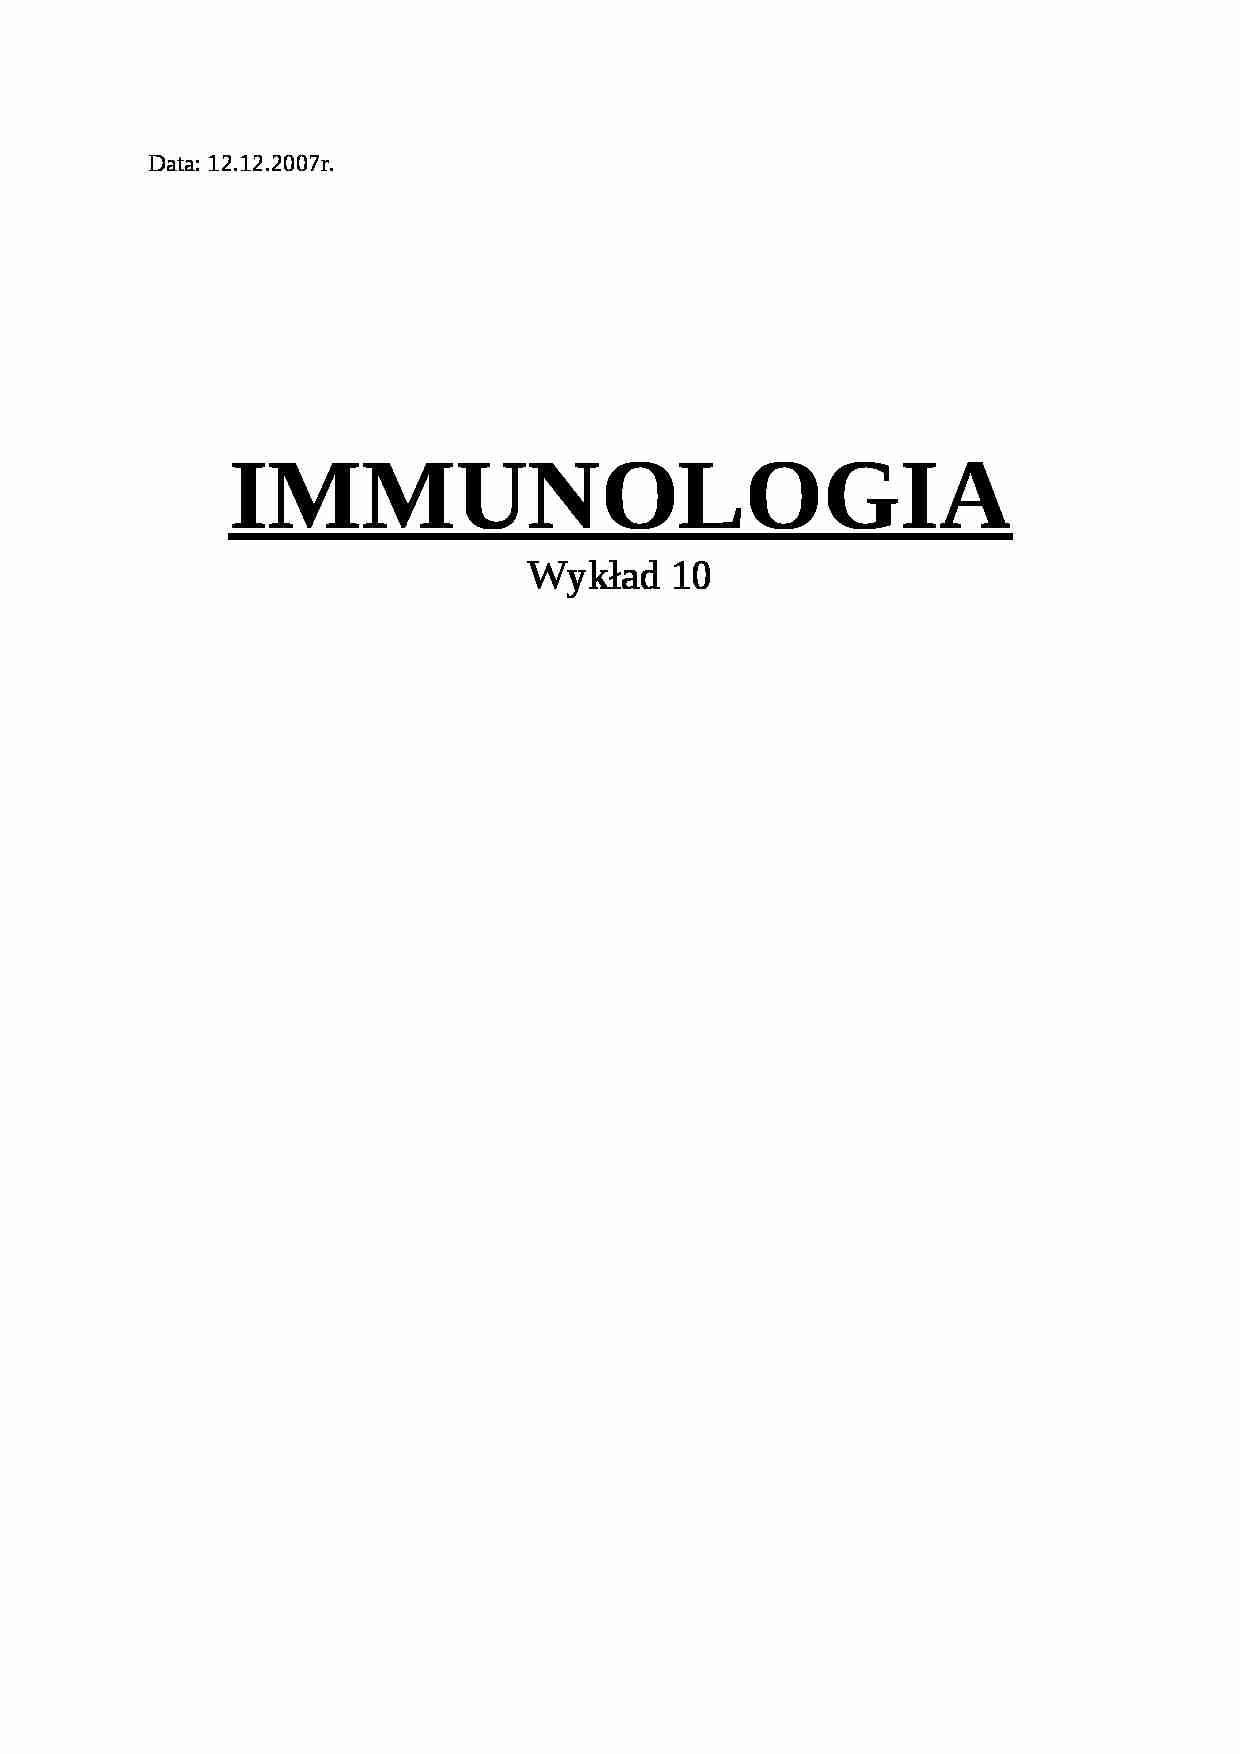 Immunologia - wykład 10 - strona 1